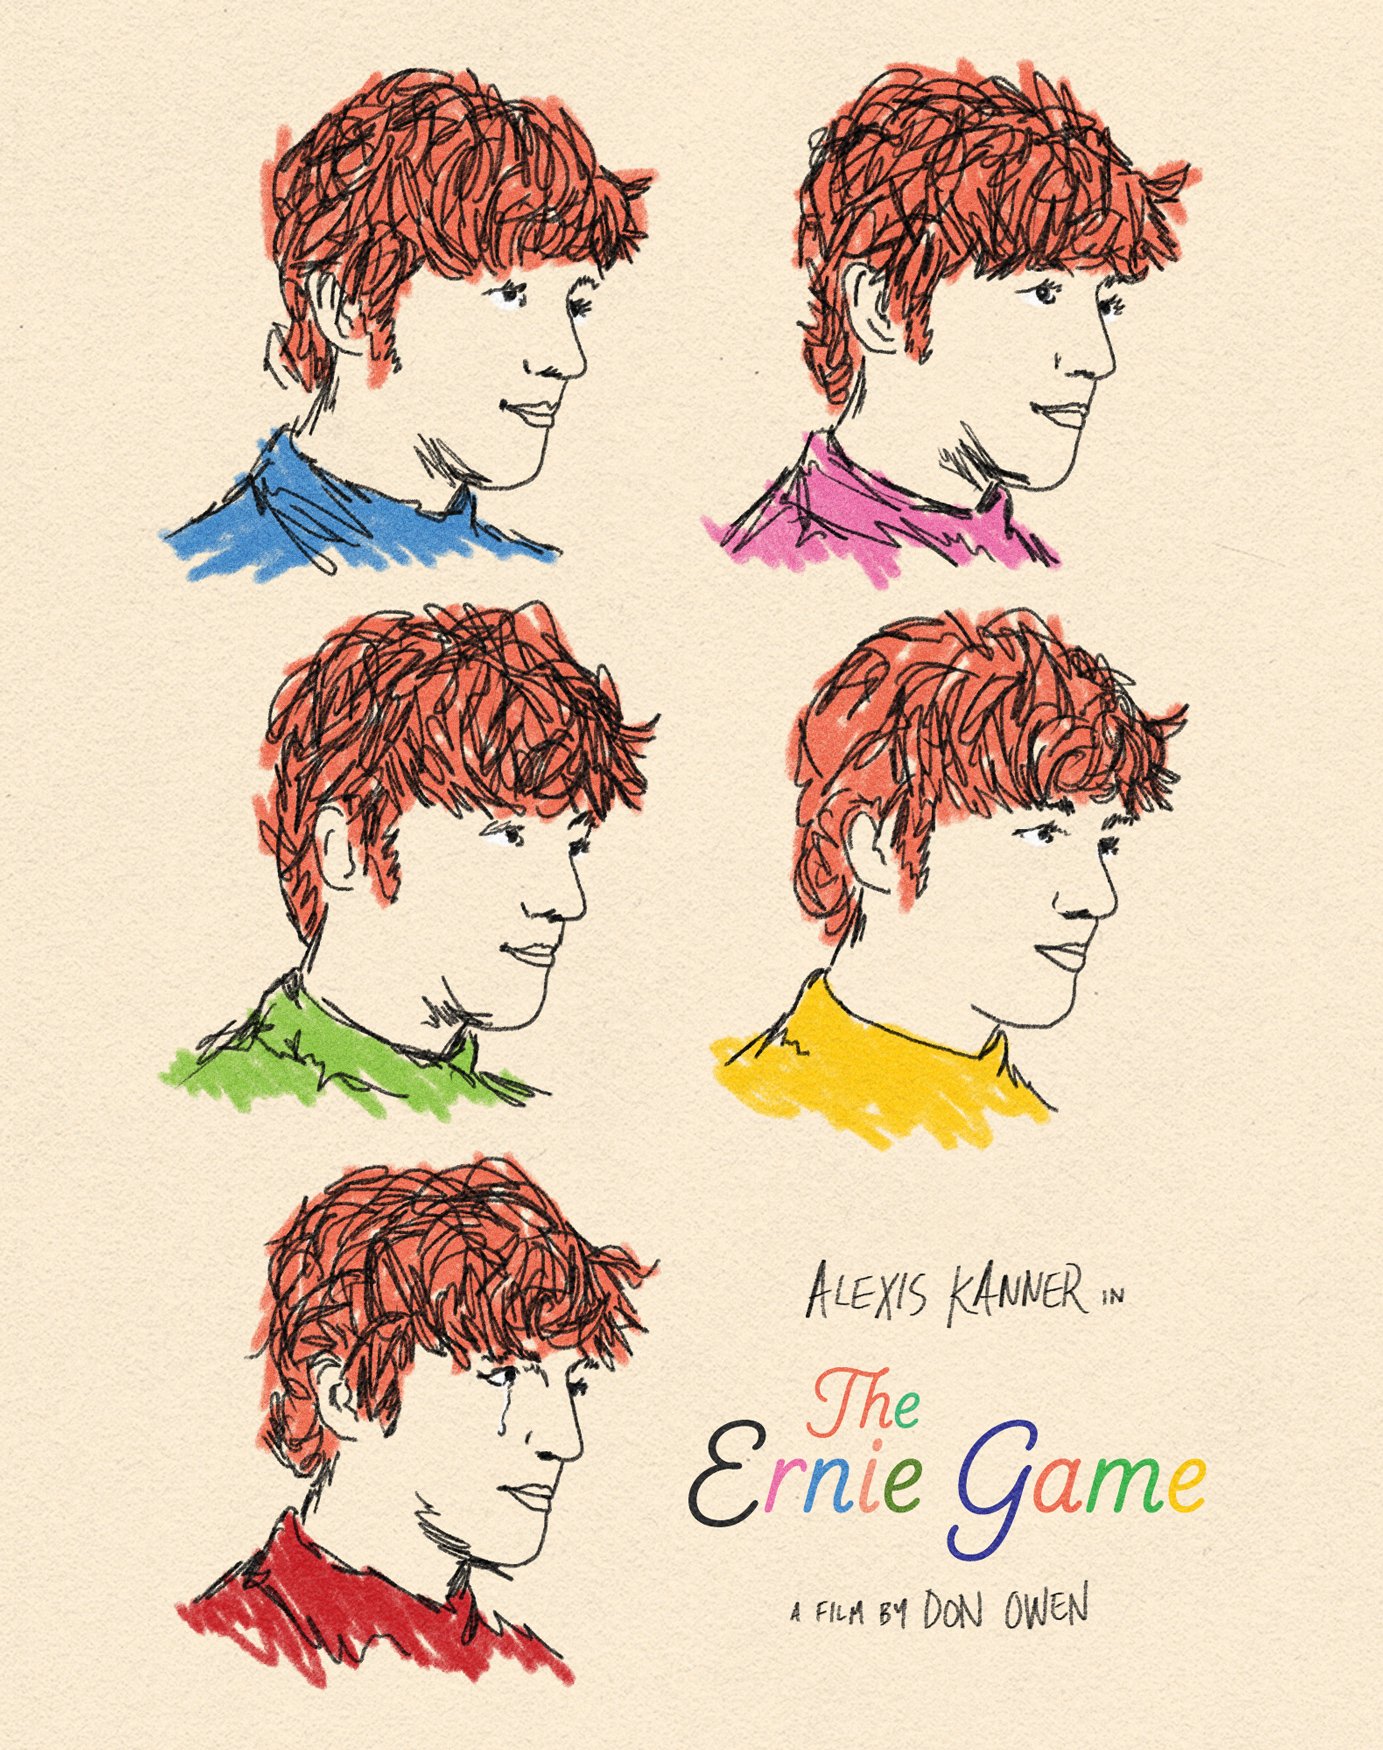 The Ernie Game (1967)